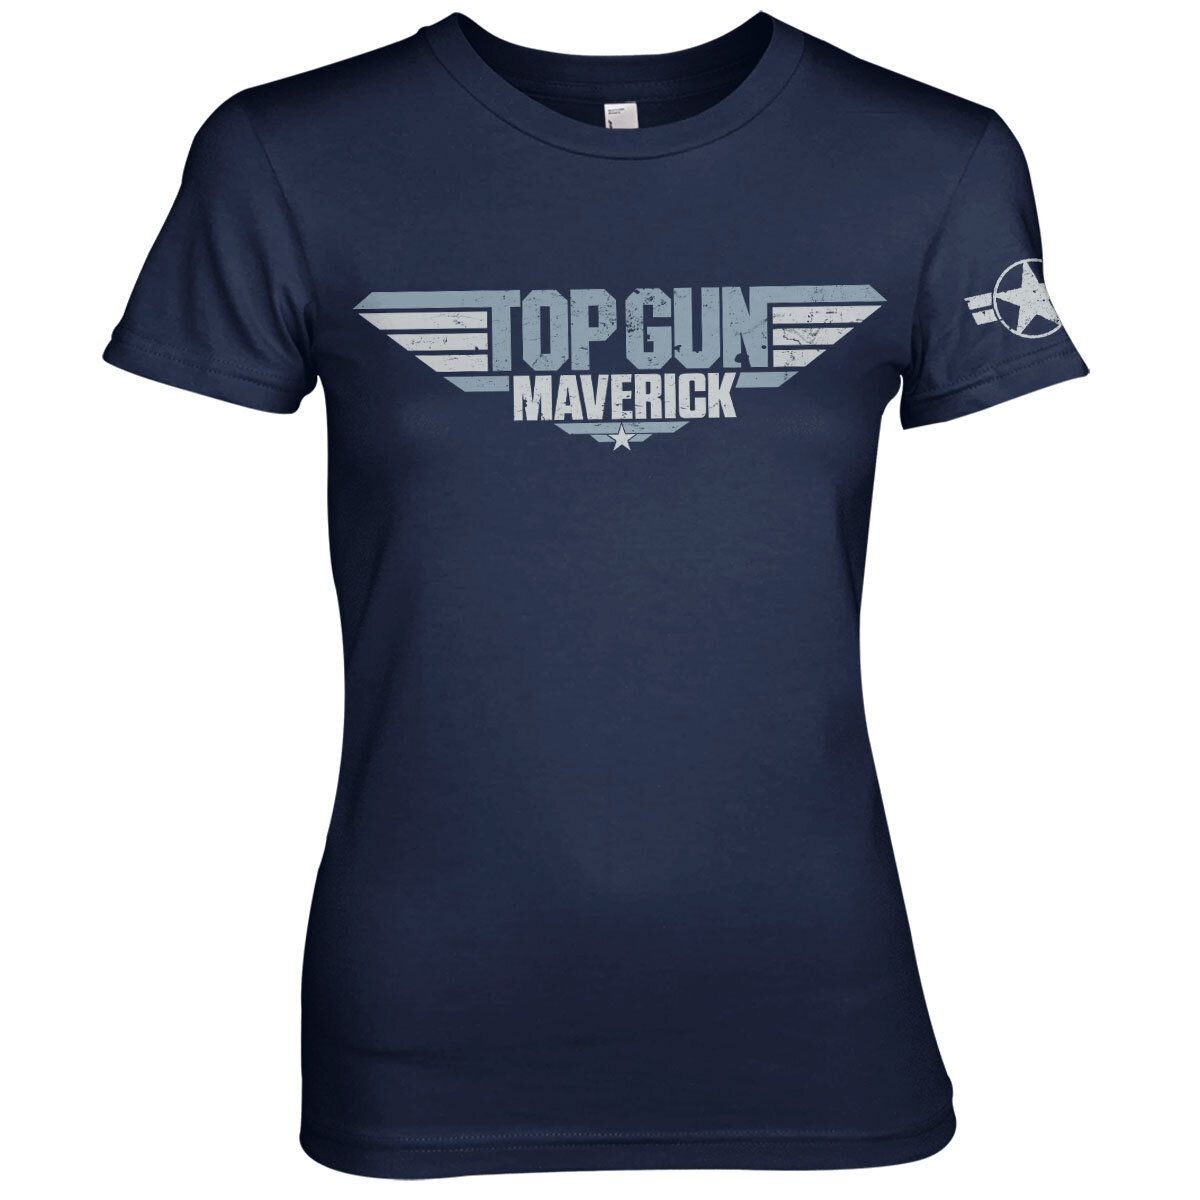 Top Gun Maverick Merchandise - Shirtstore